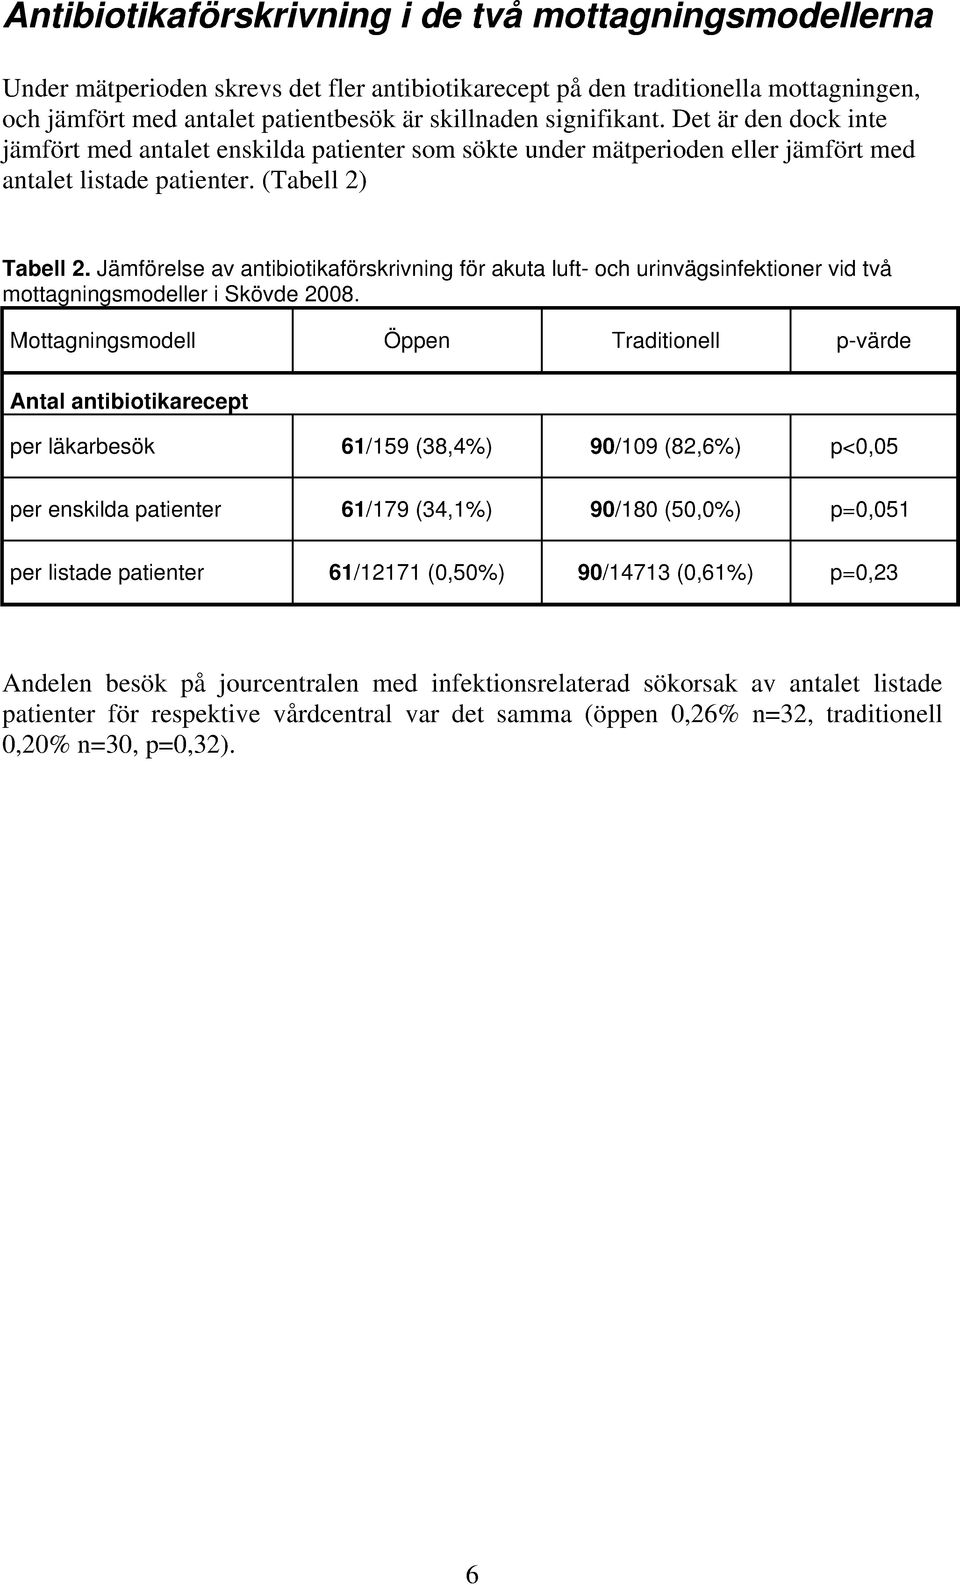 Jämförelse av antibiotikaförskrivning för akuta luft- och urinvägsinfektioner vid två mottagningsmodeller i Skövde 2008.